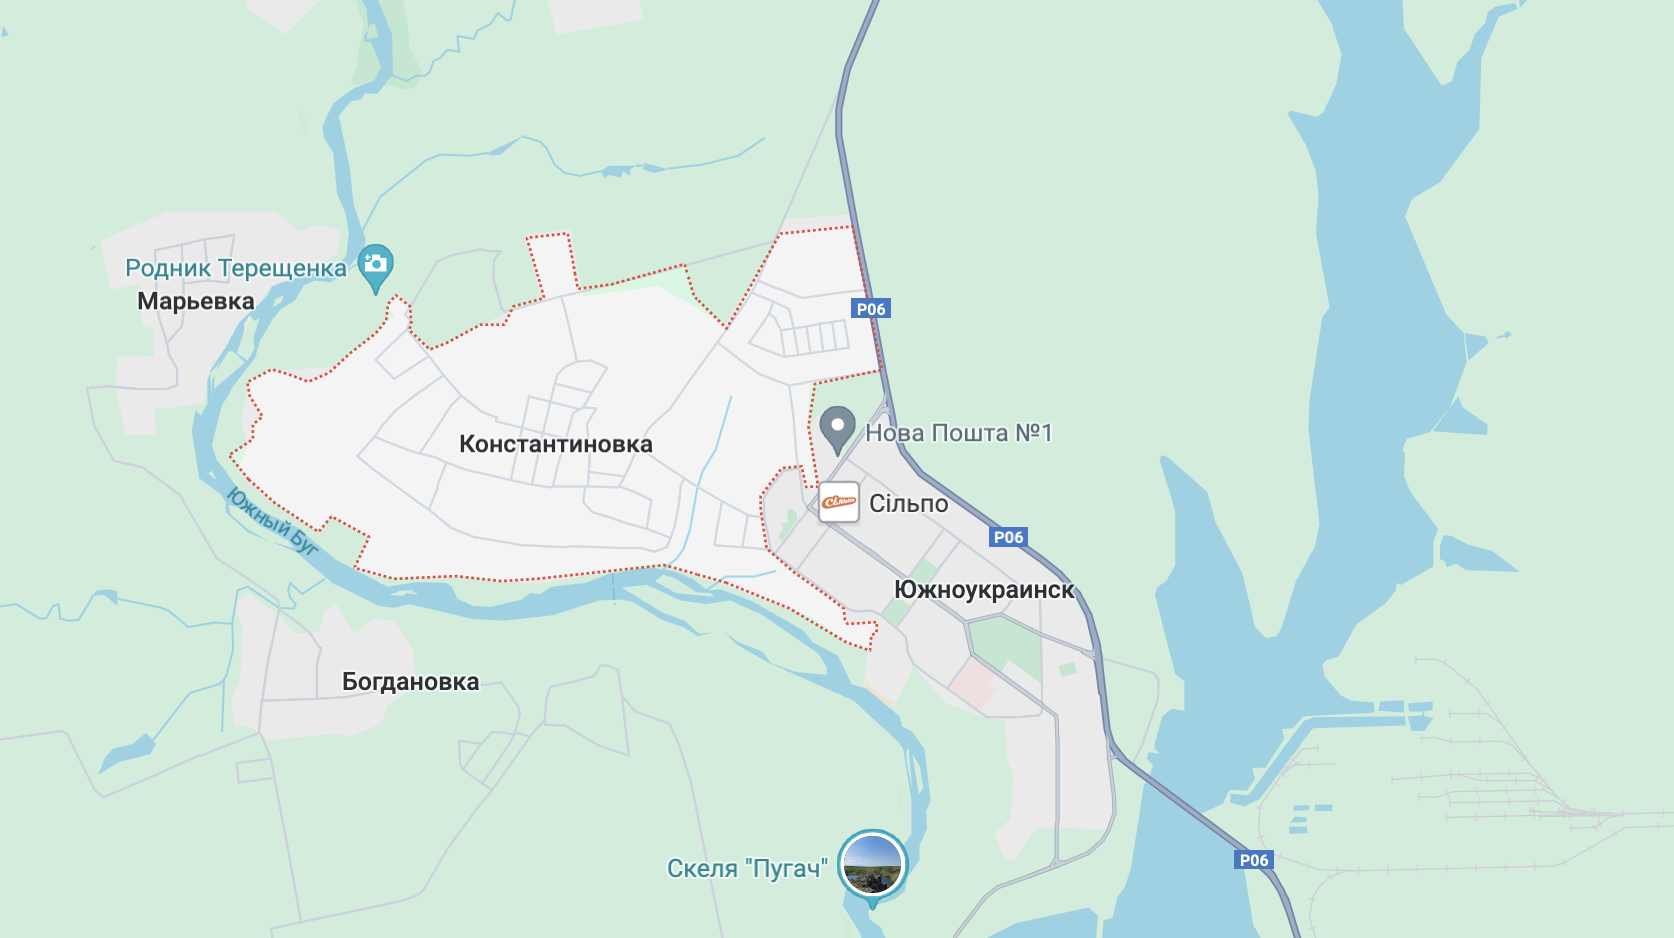 Селище Костянтинівка біля Южноукраїнська Миколаївської області, скріншот з Google Maps